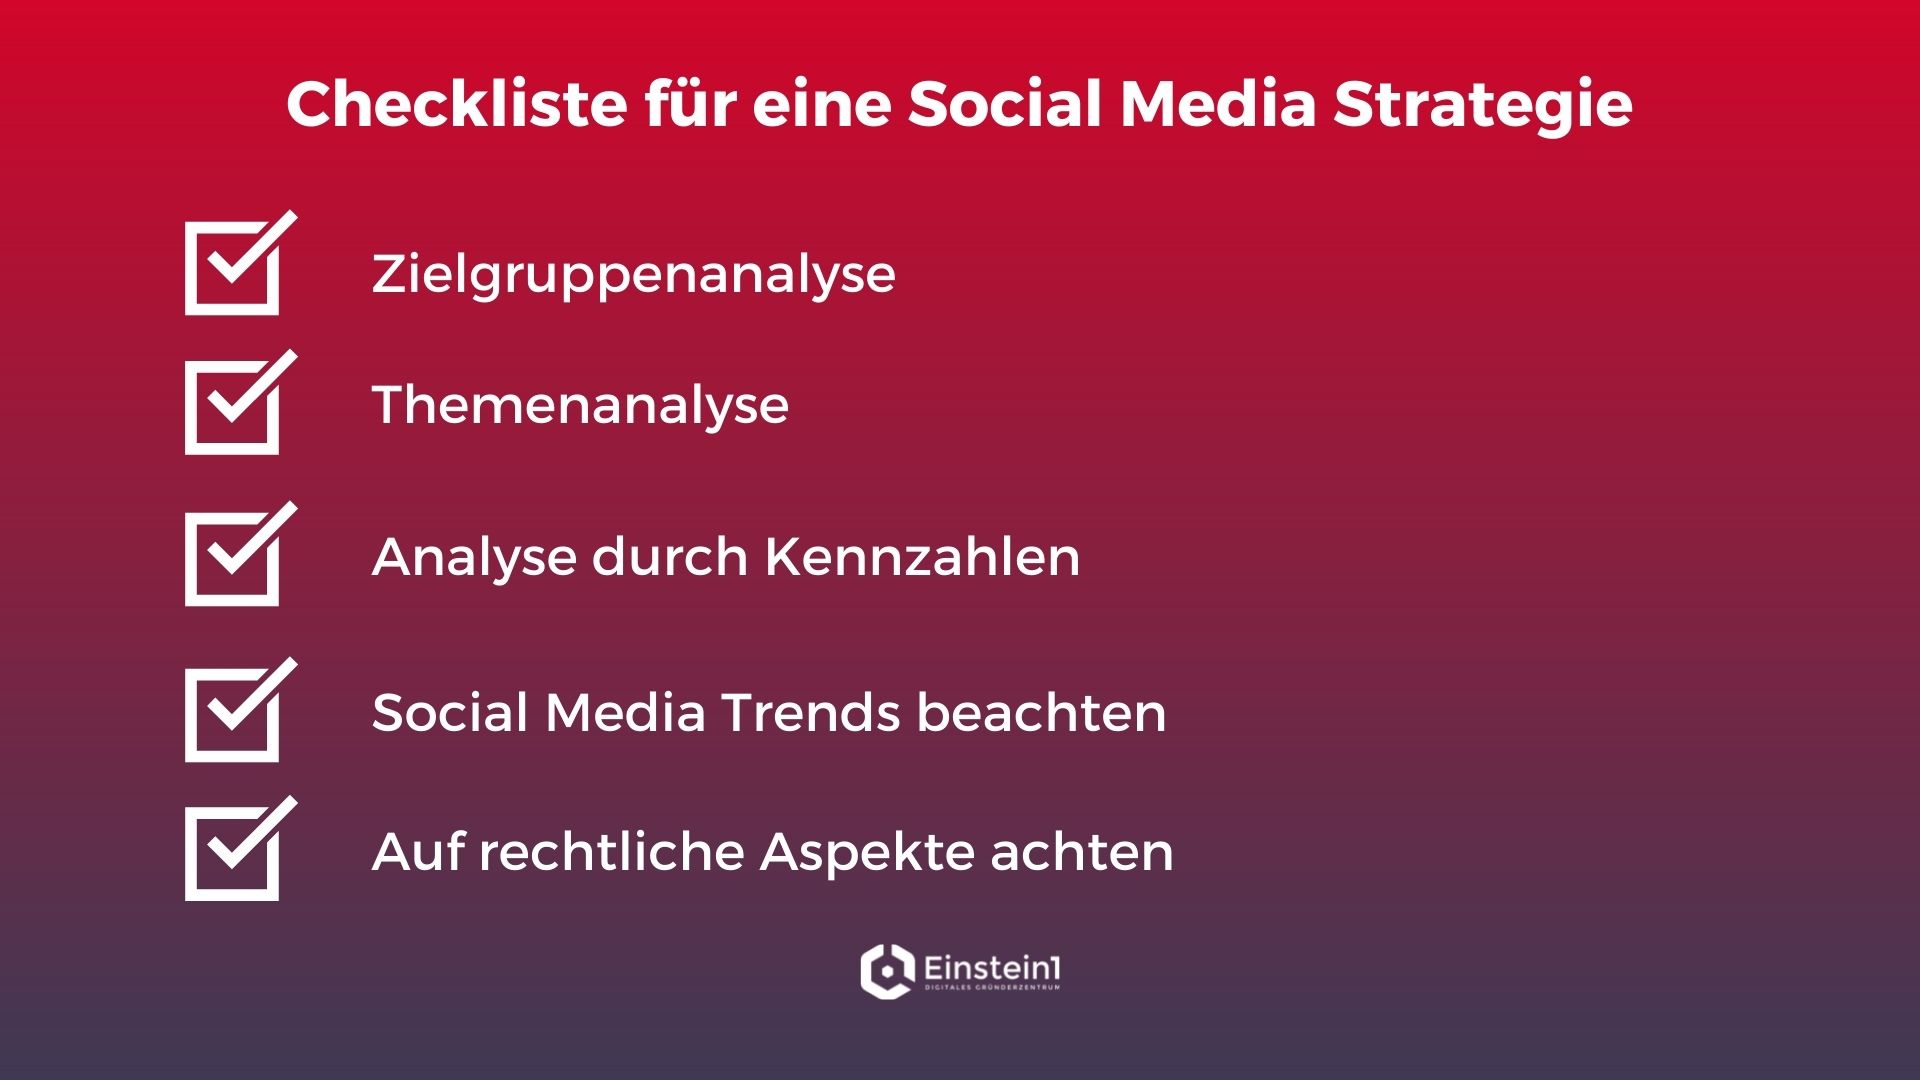 checkliste-für-eine-social-media-strategie-einstein1